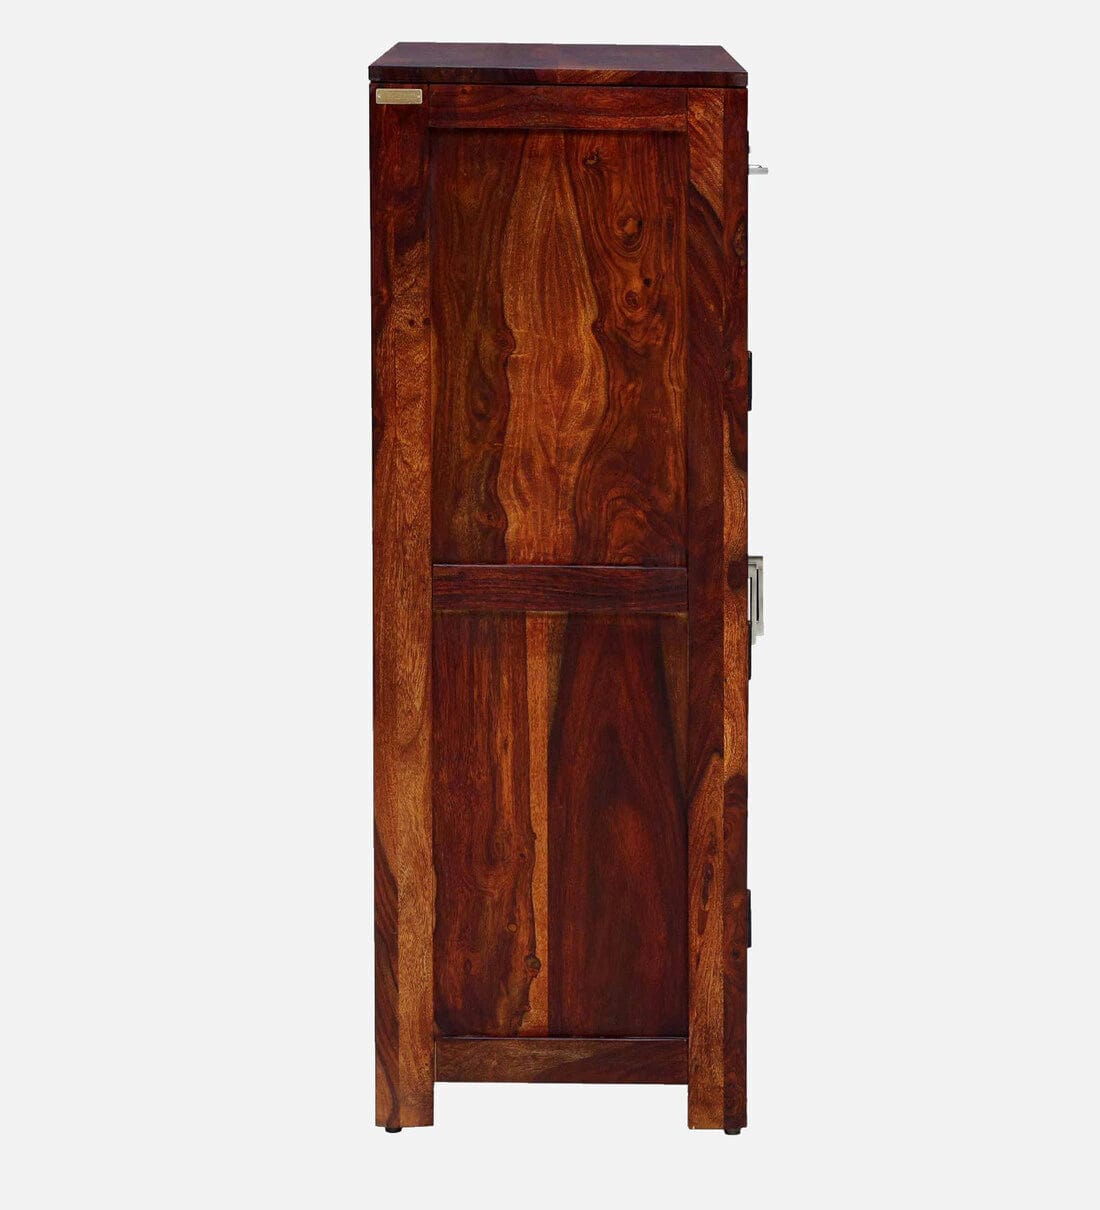 Stigen Sheesham Wood Shoe Cabinet In Honey Oak Finish,